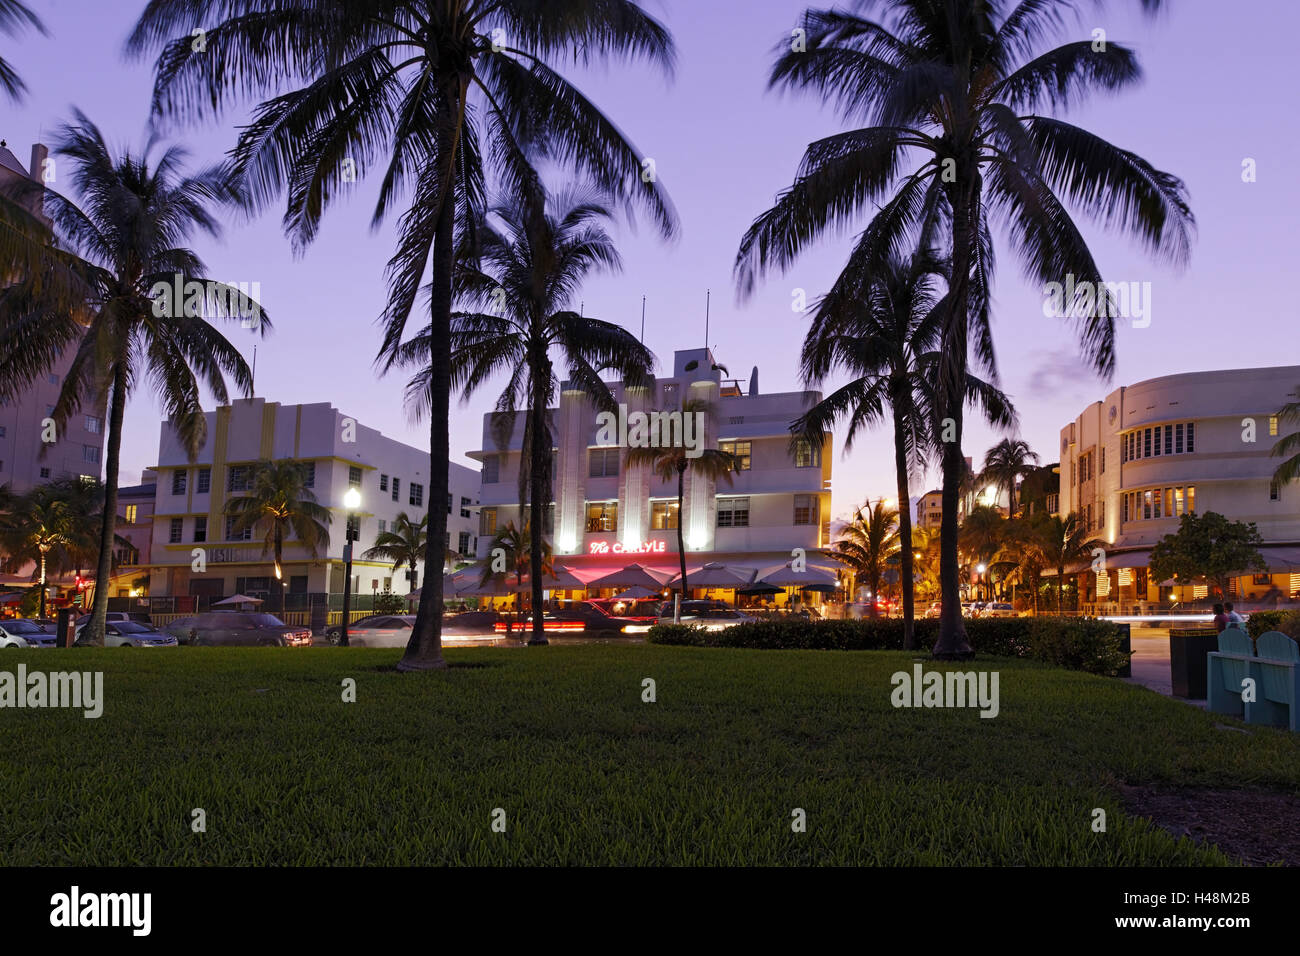 Hotel 'The Carlyle' al atardecer, Ocean Drive de Miami South Beach, el Distrito Art Deco, Florida, Estados Unidos. Foto de stock